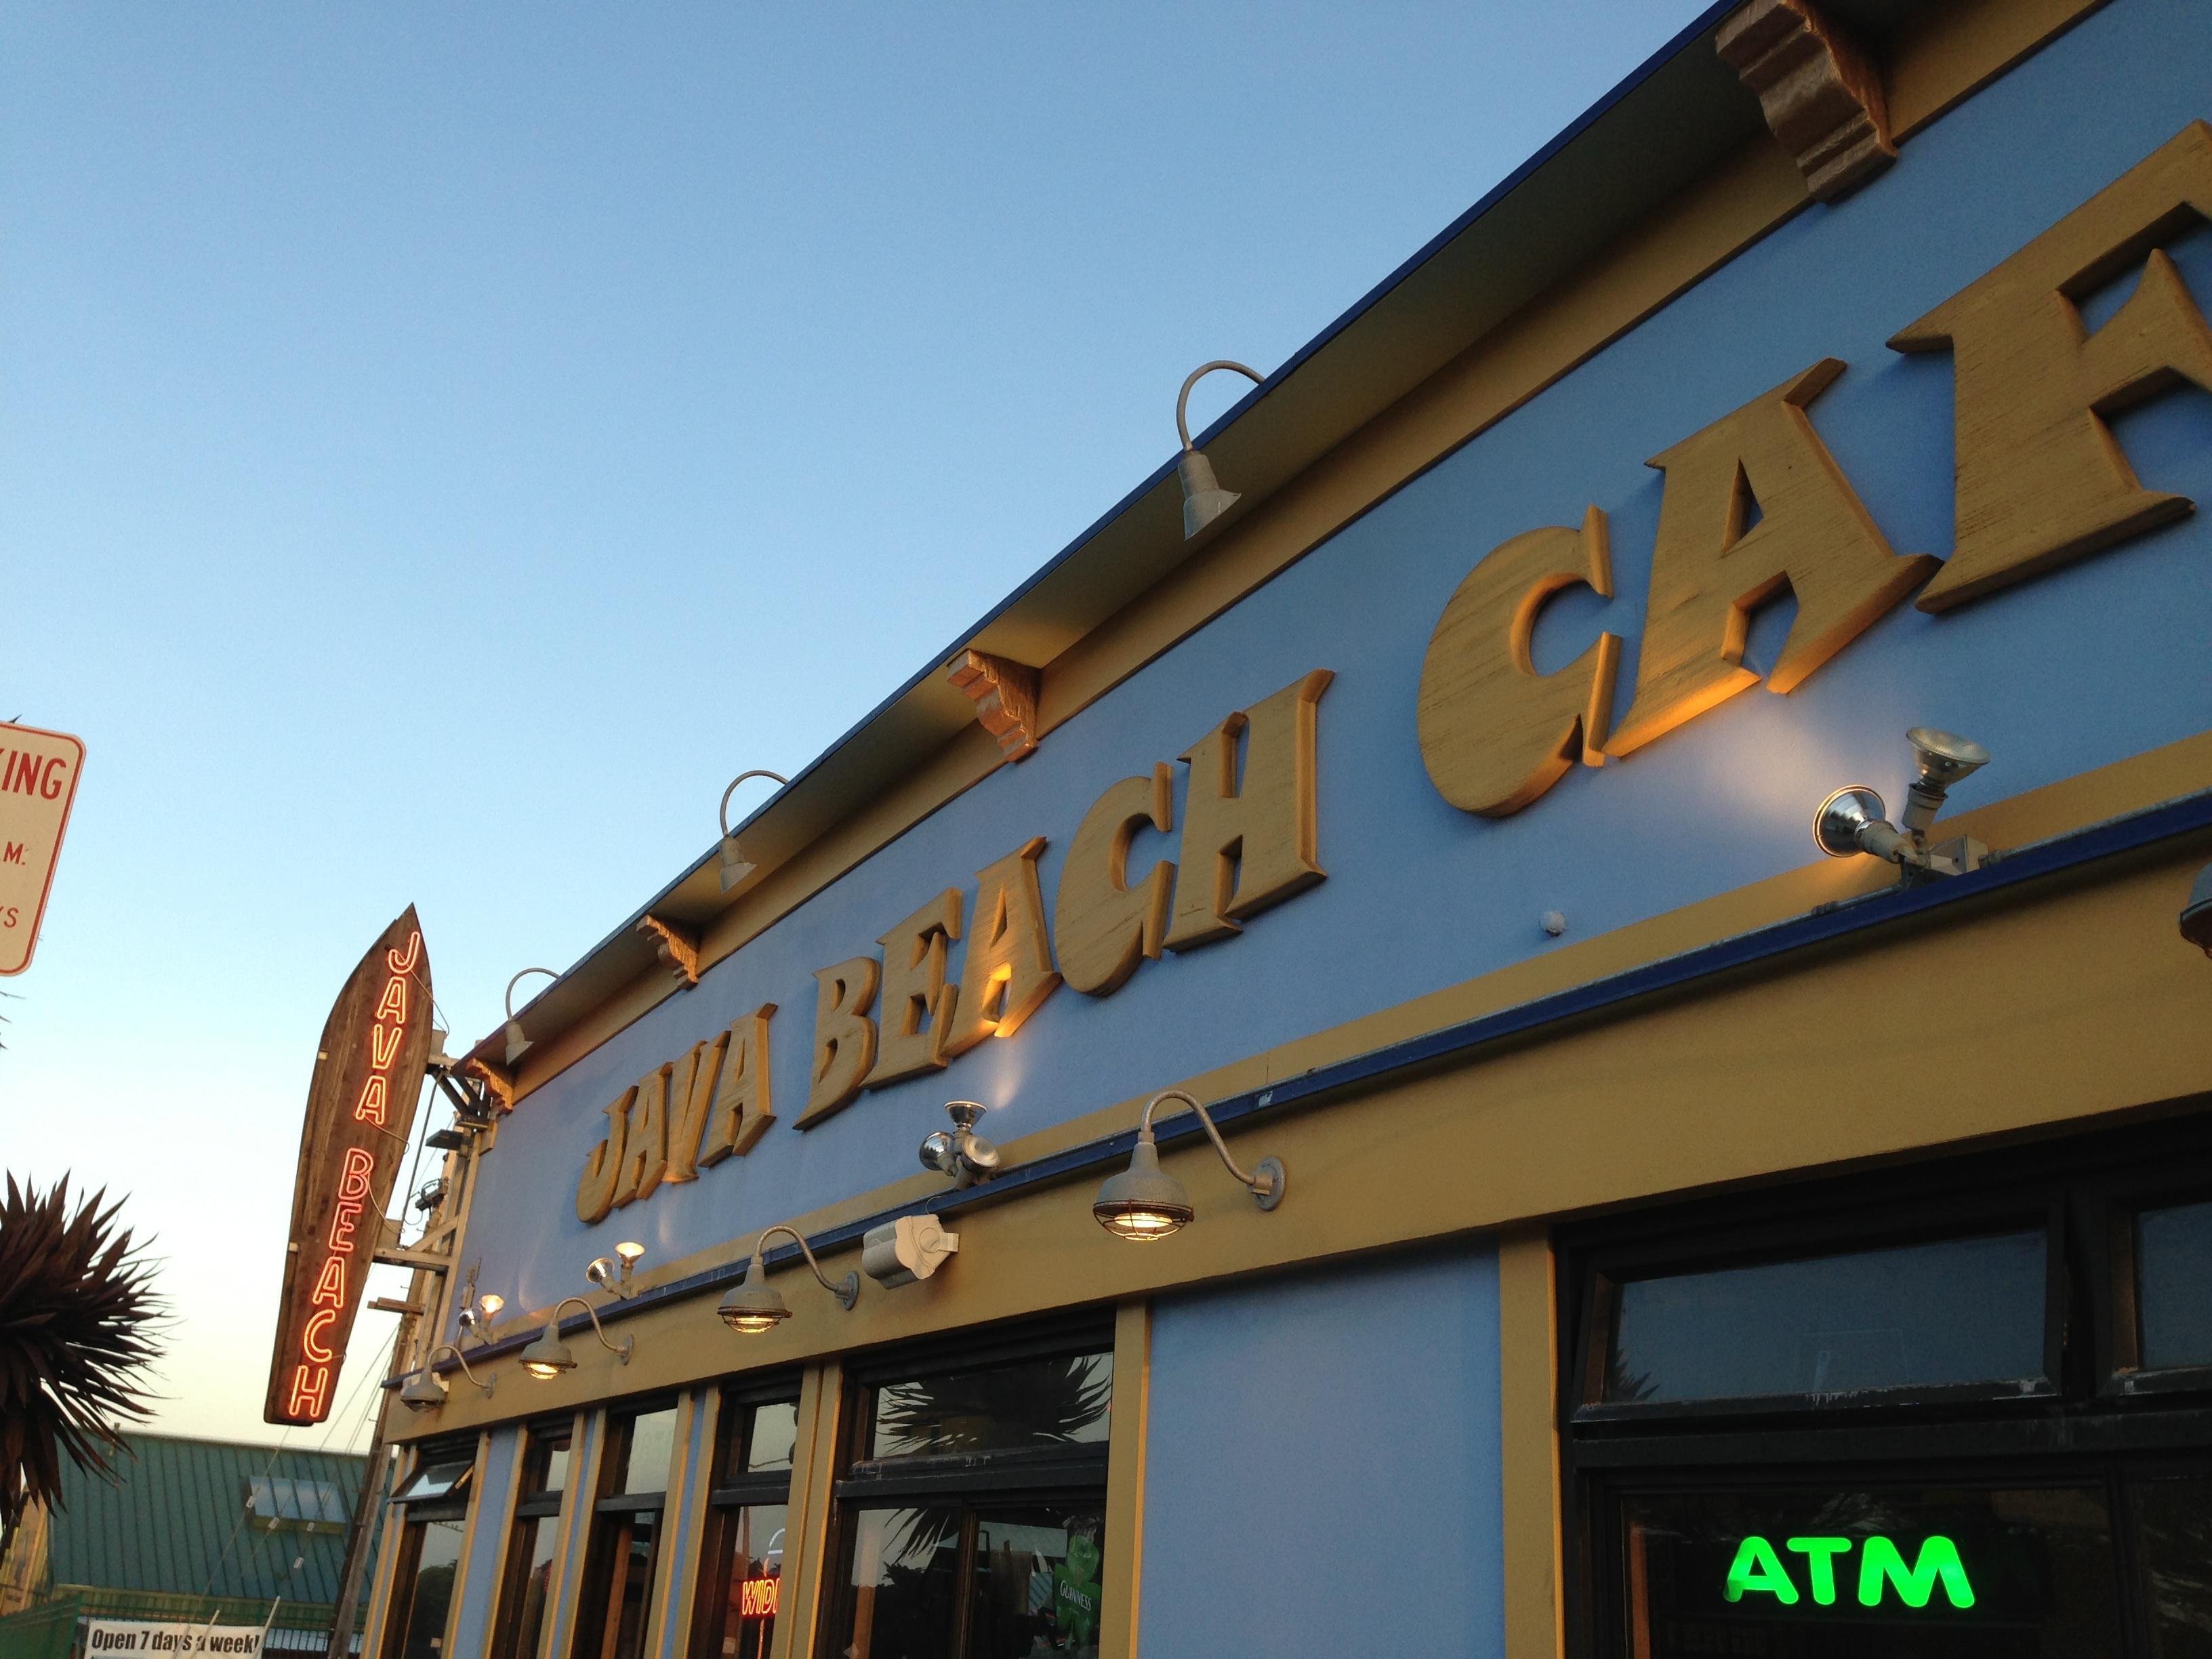 Java Beach Cafe